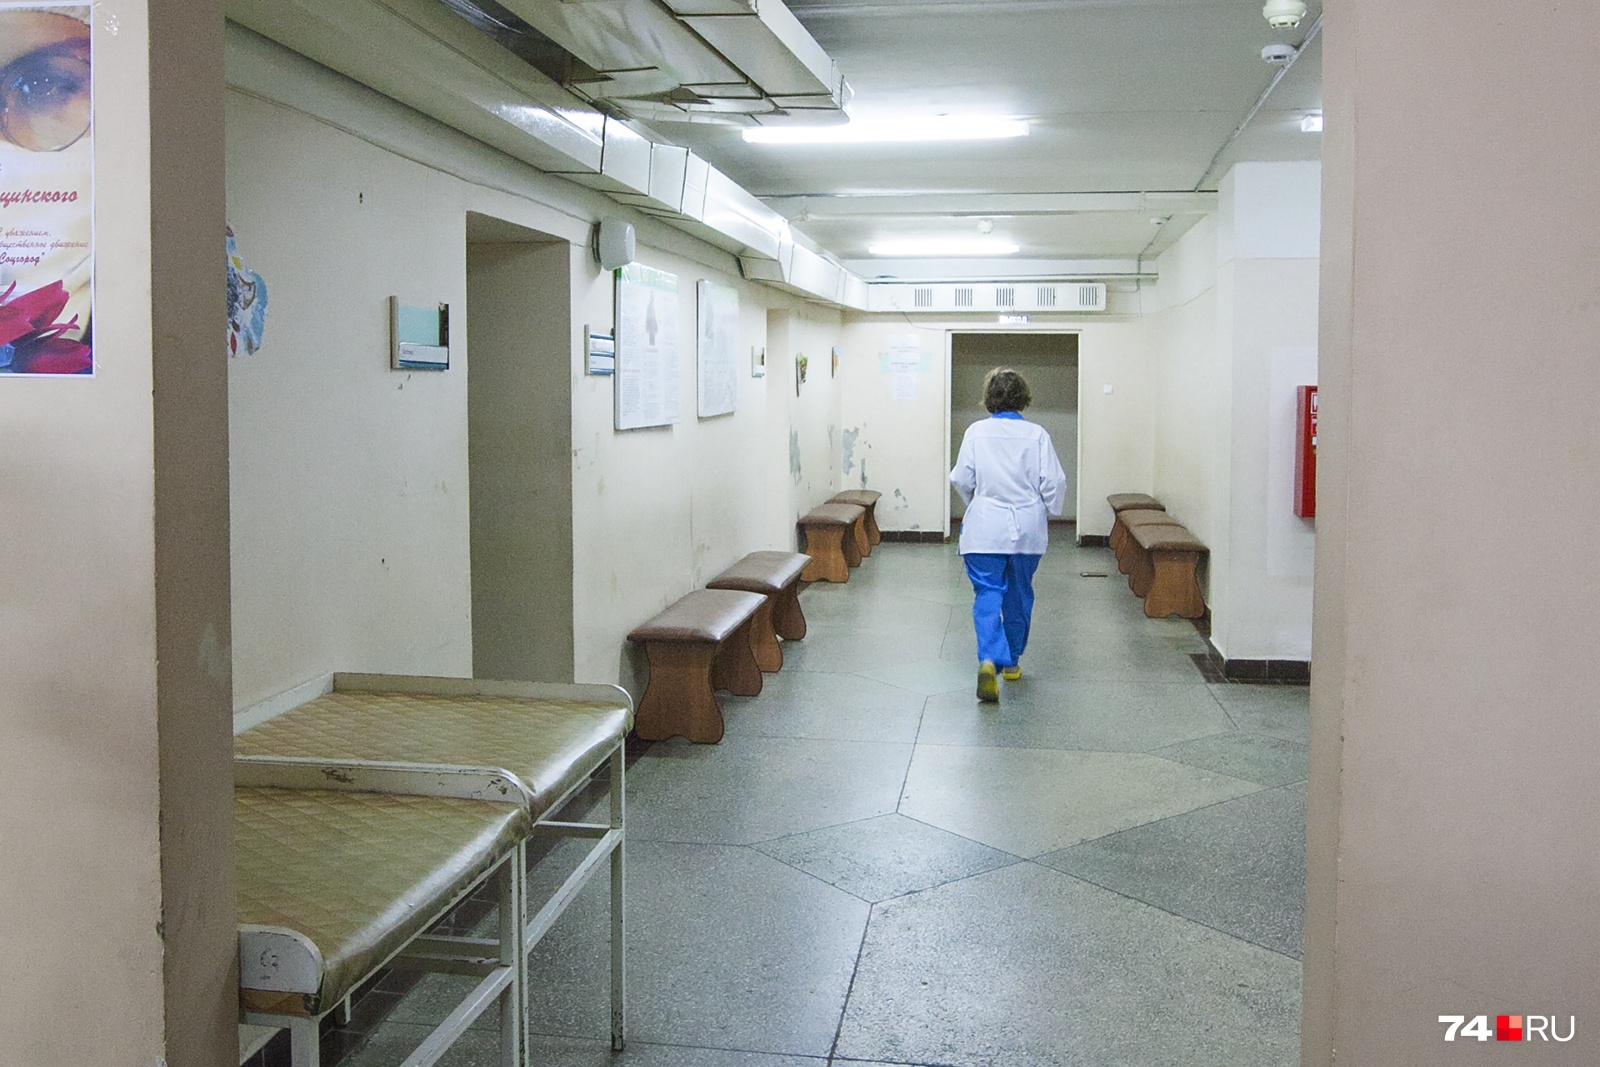 Расчленил и выпил кровь: в Челябинске арестовали врача, ранее судимого за ритуальное убийство